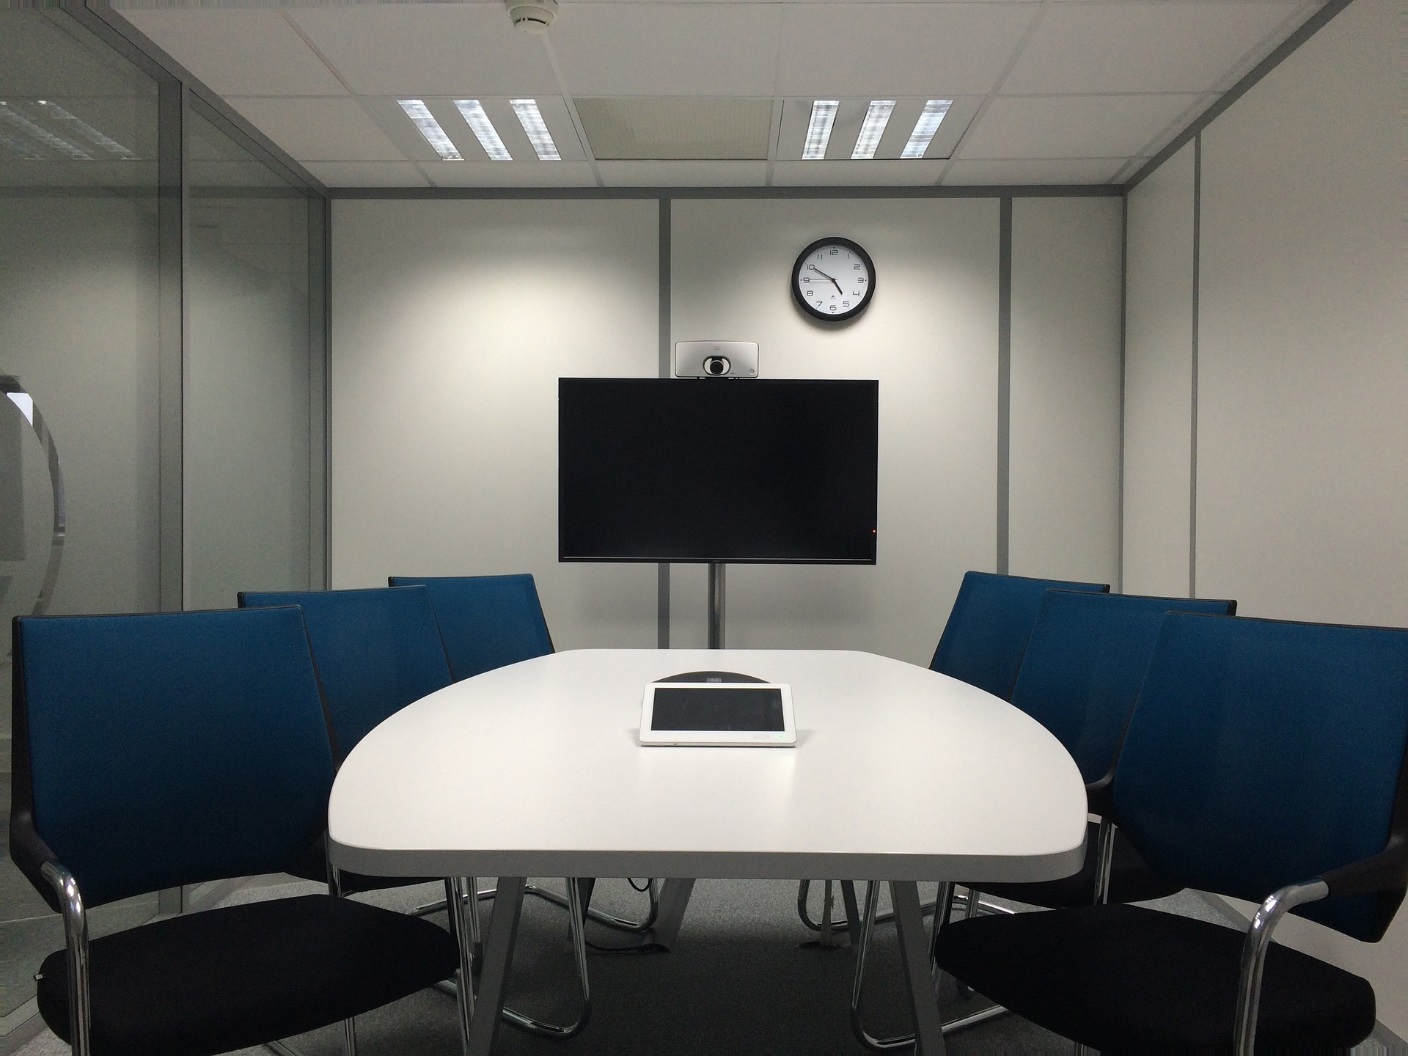 Ein Meetingraum mit blauen Stühlen und Bildschirm.
[Copyright = jraffin / pixabay.com]